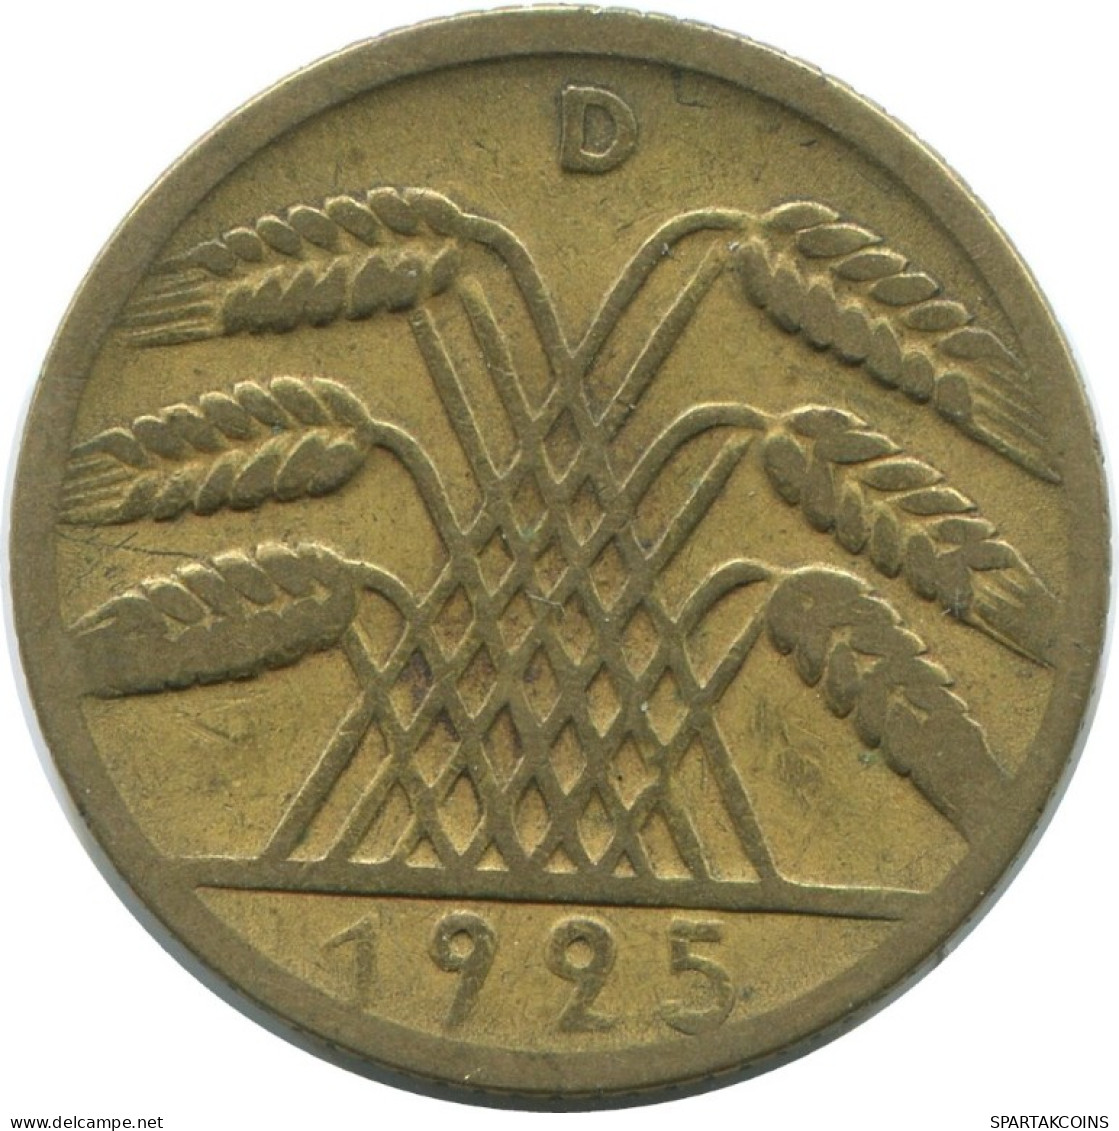 10 REICHSPFENNIG 1925 D GERMANY Coin #AE371.U.A - 10 Rentenpfennig & 10 Reichspfennig